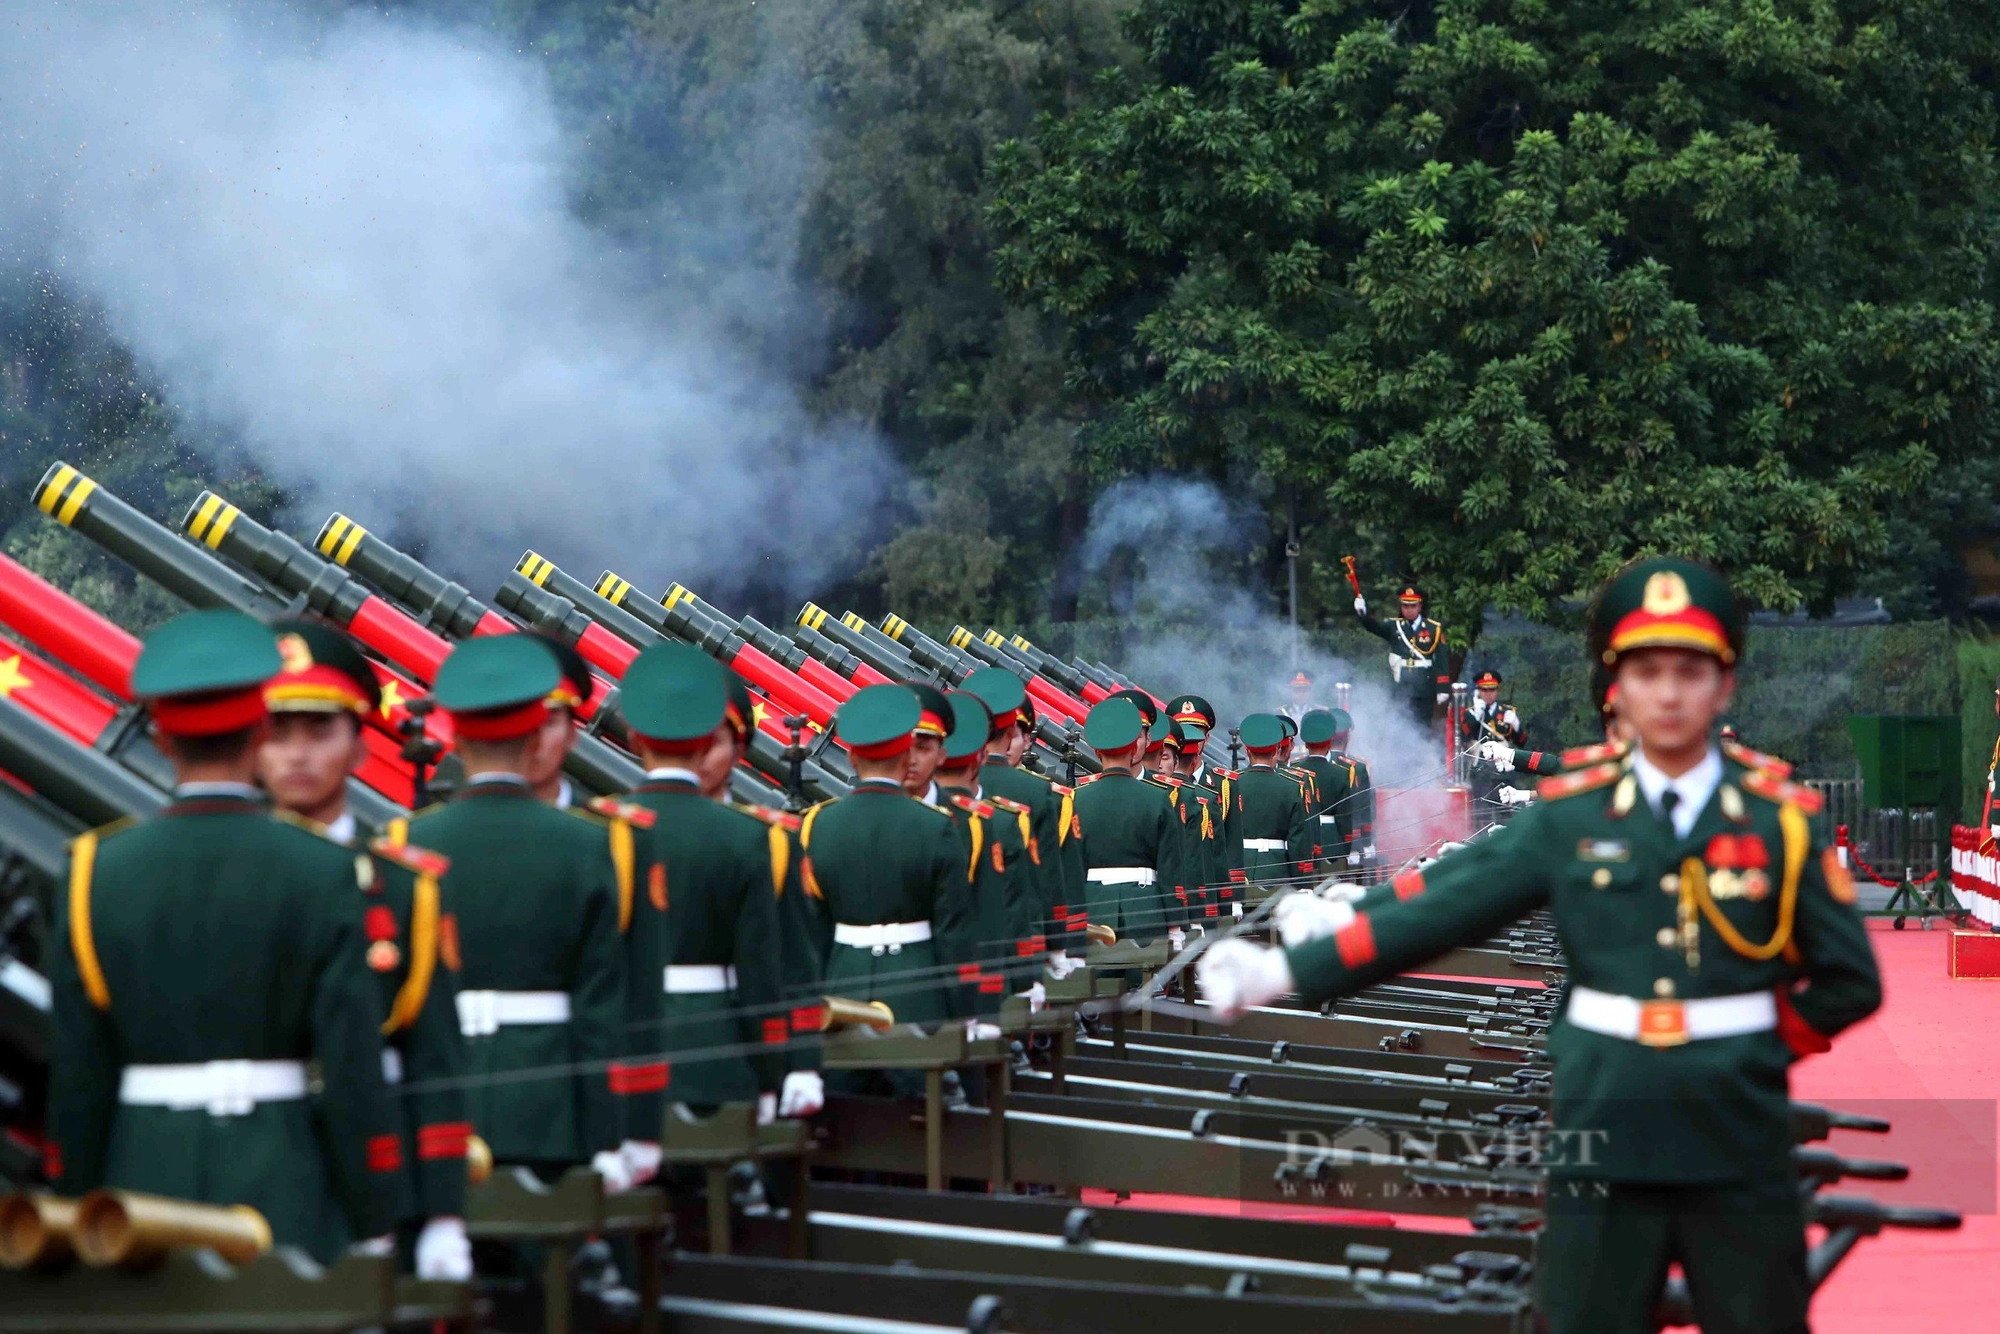 Bắn 21 phát đại bác chào mừng Tổng Bí thư, Chủ tịch Trung Quốc Tập Cận Bình thăm Việt Nam - Ảnh 3.